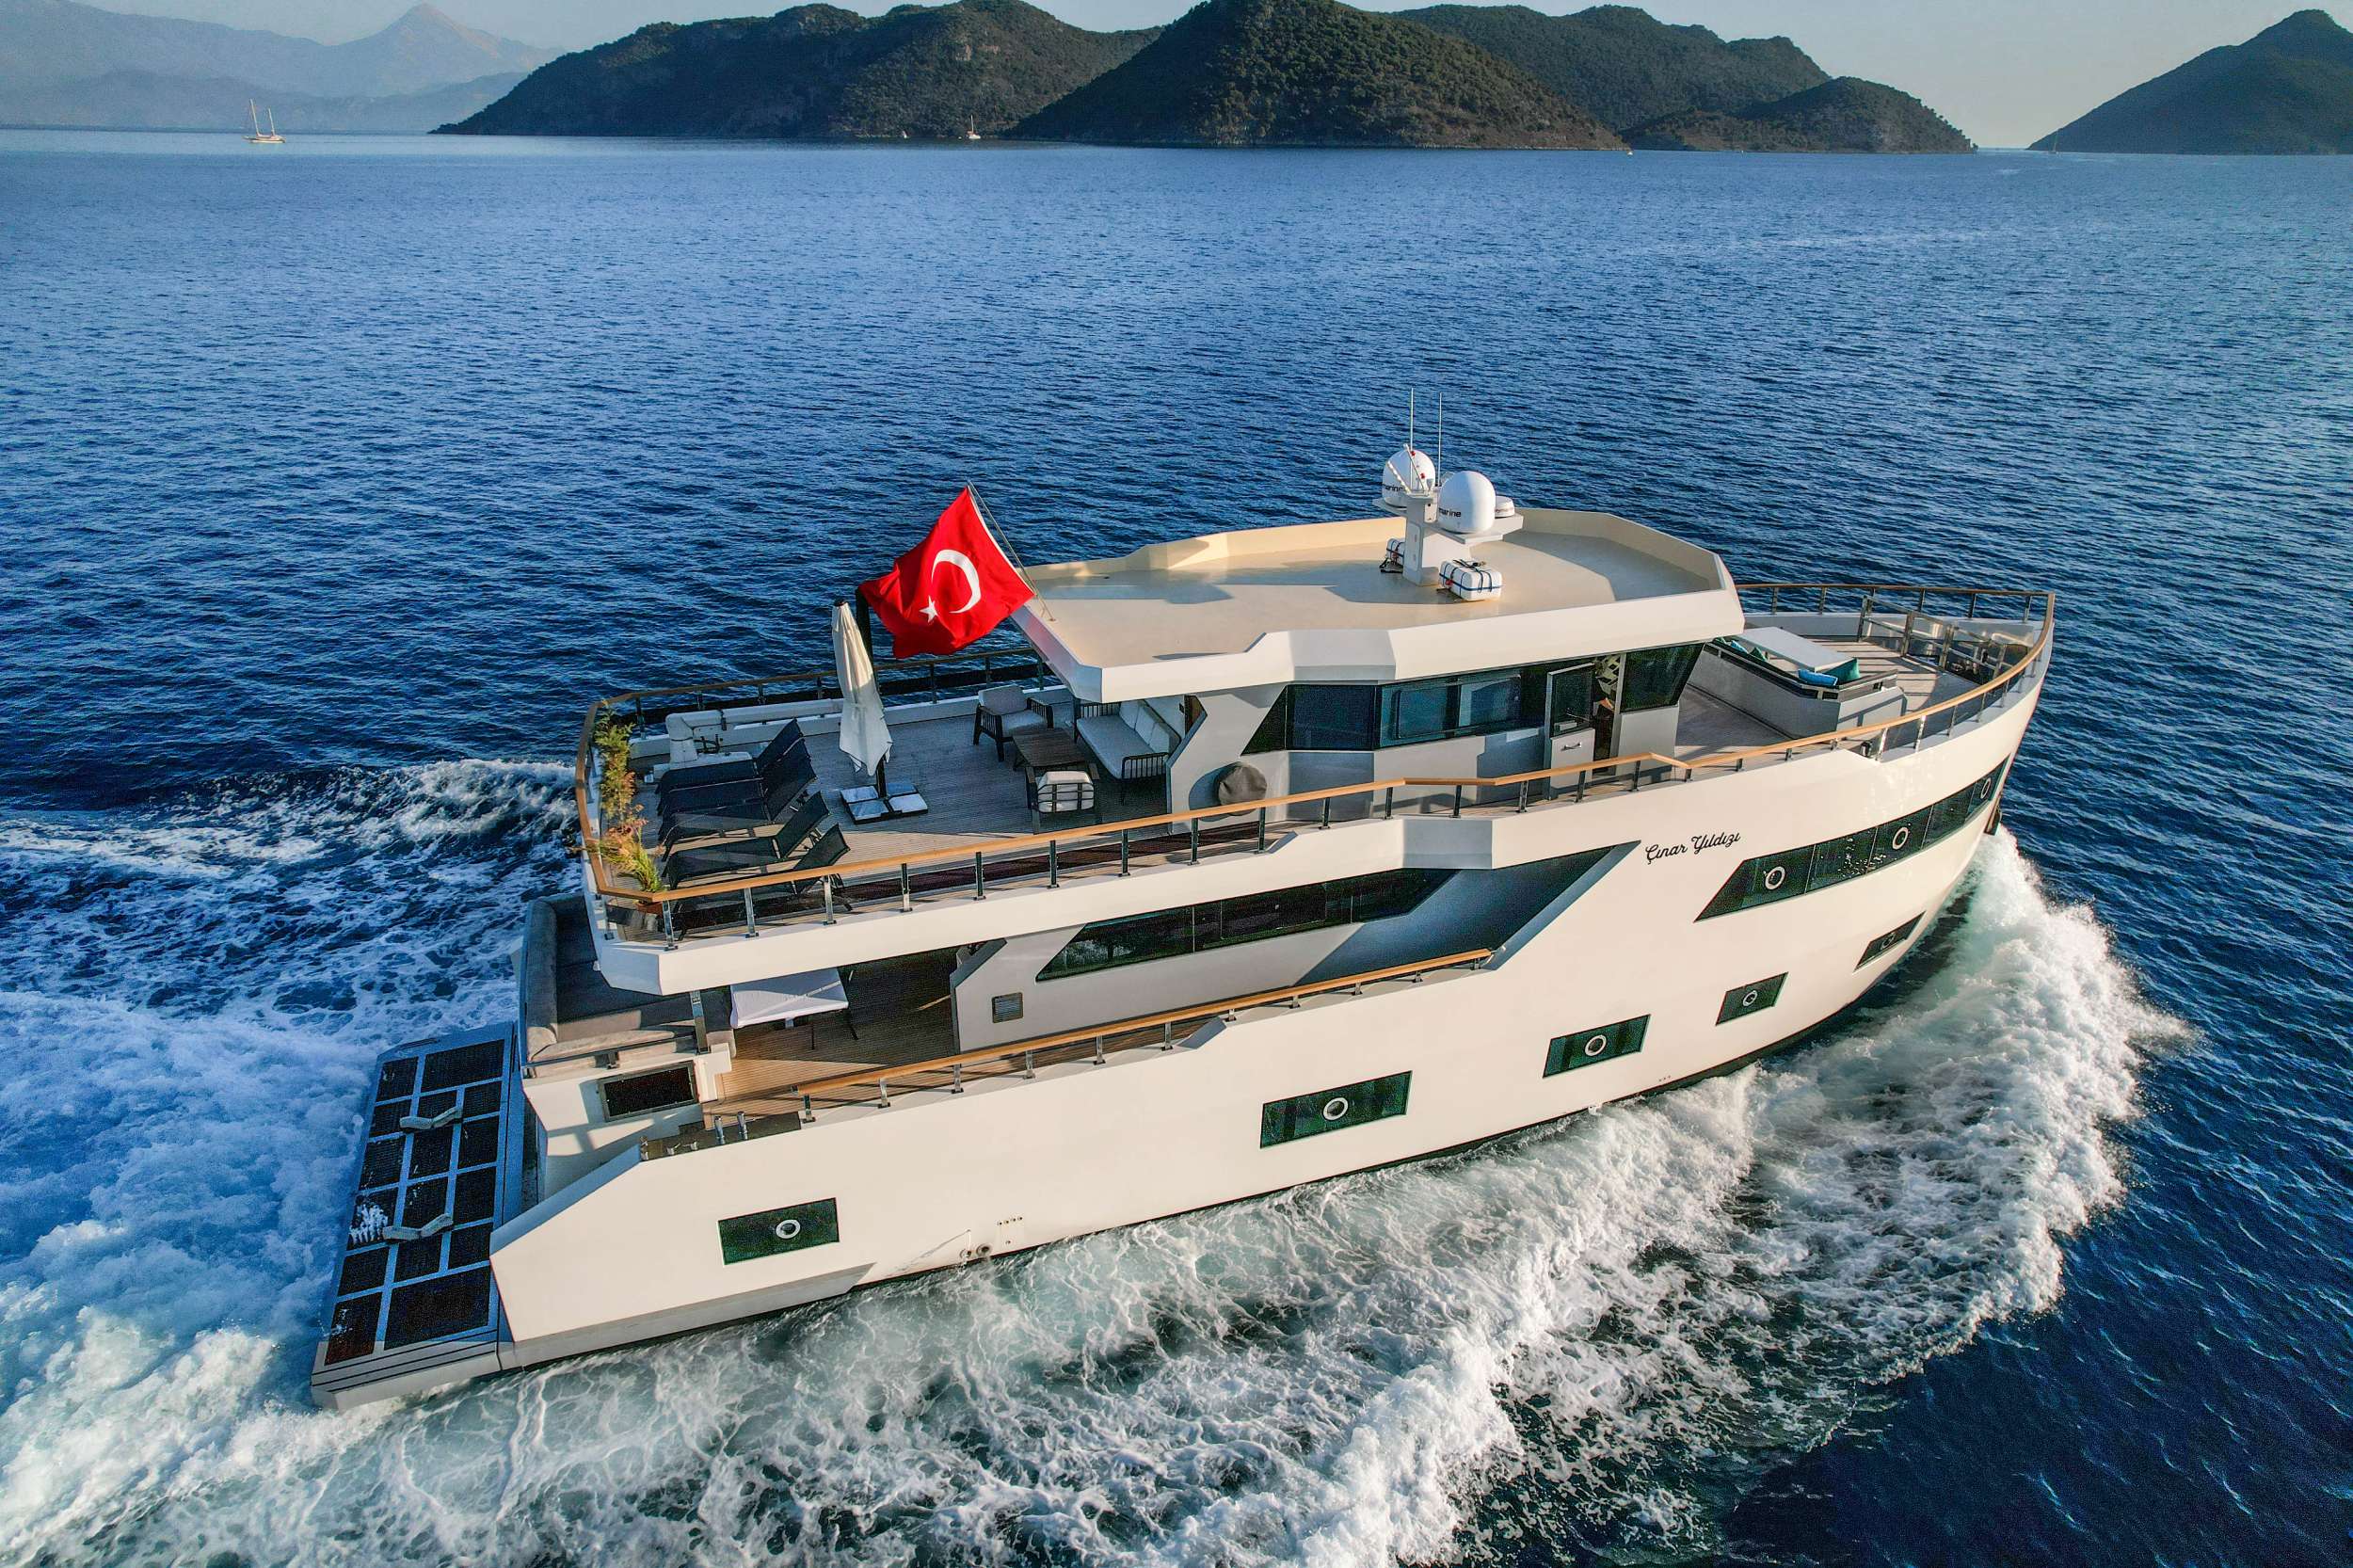 Cinar Yildizi Yacht Charter - Ritzy Charters